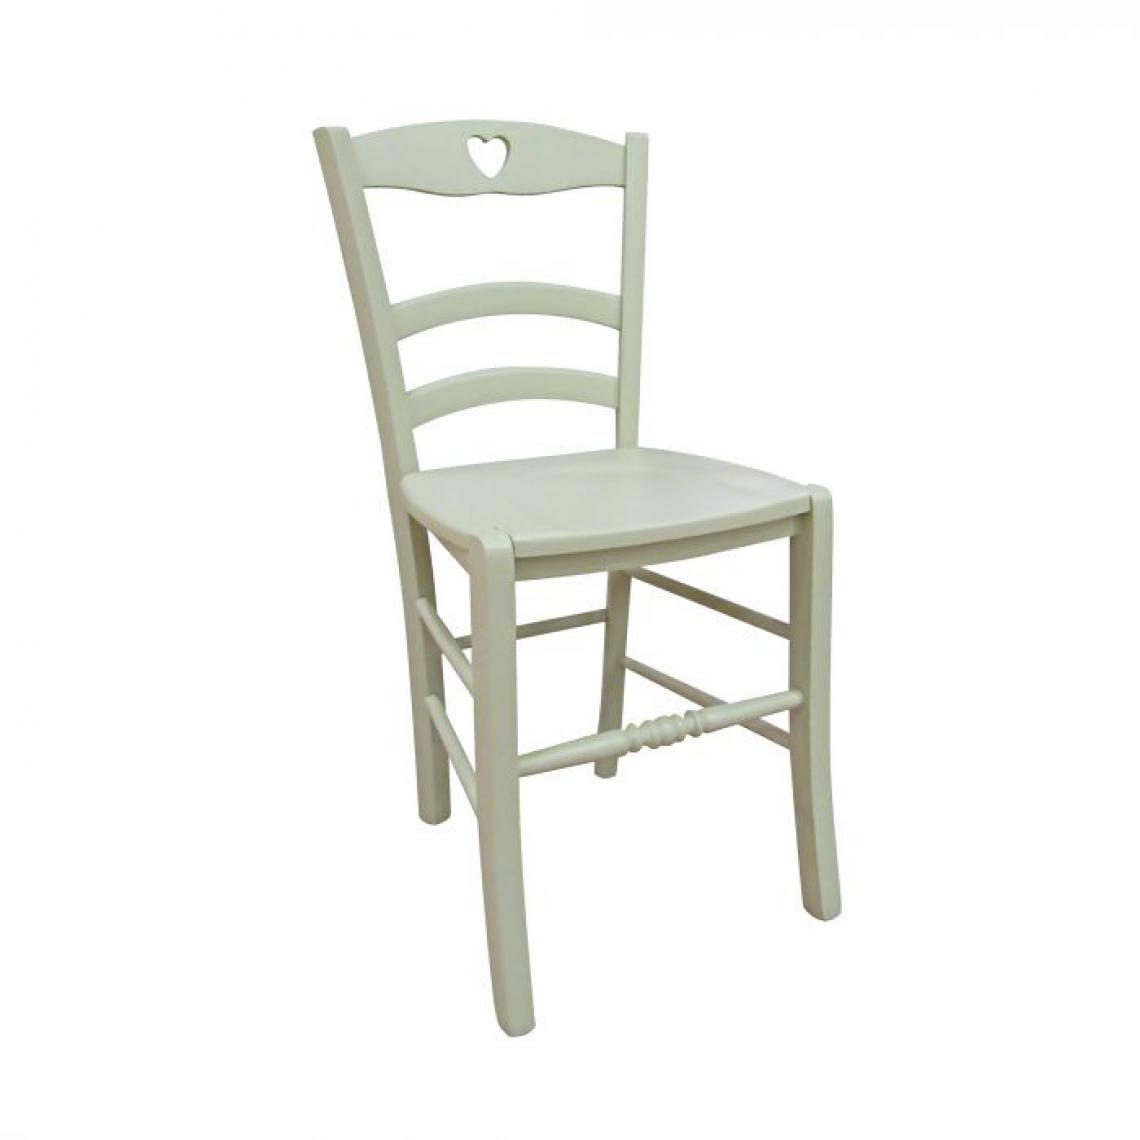 Alter - Chaise classique en bois avec détail coeur, Made in Italy, 45 x 47 x 88 cm, couleur sable, avec fond en bois - Chaises